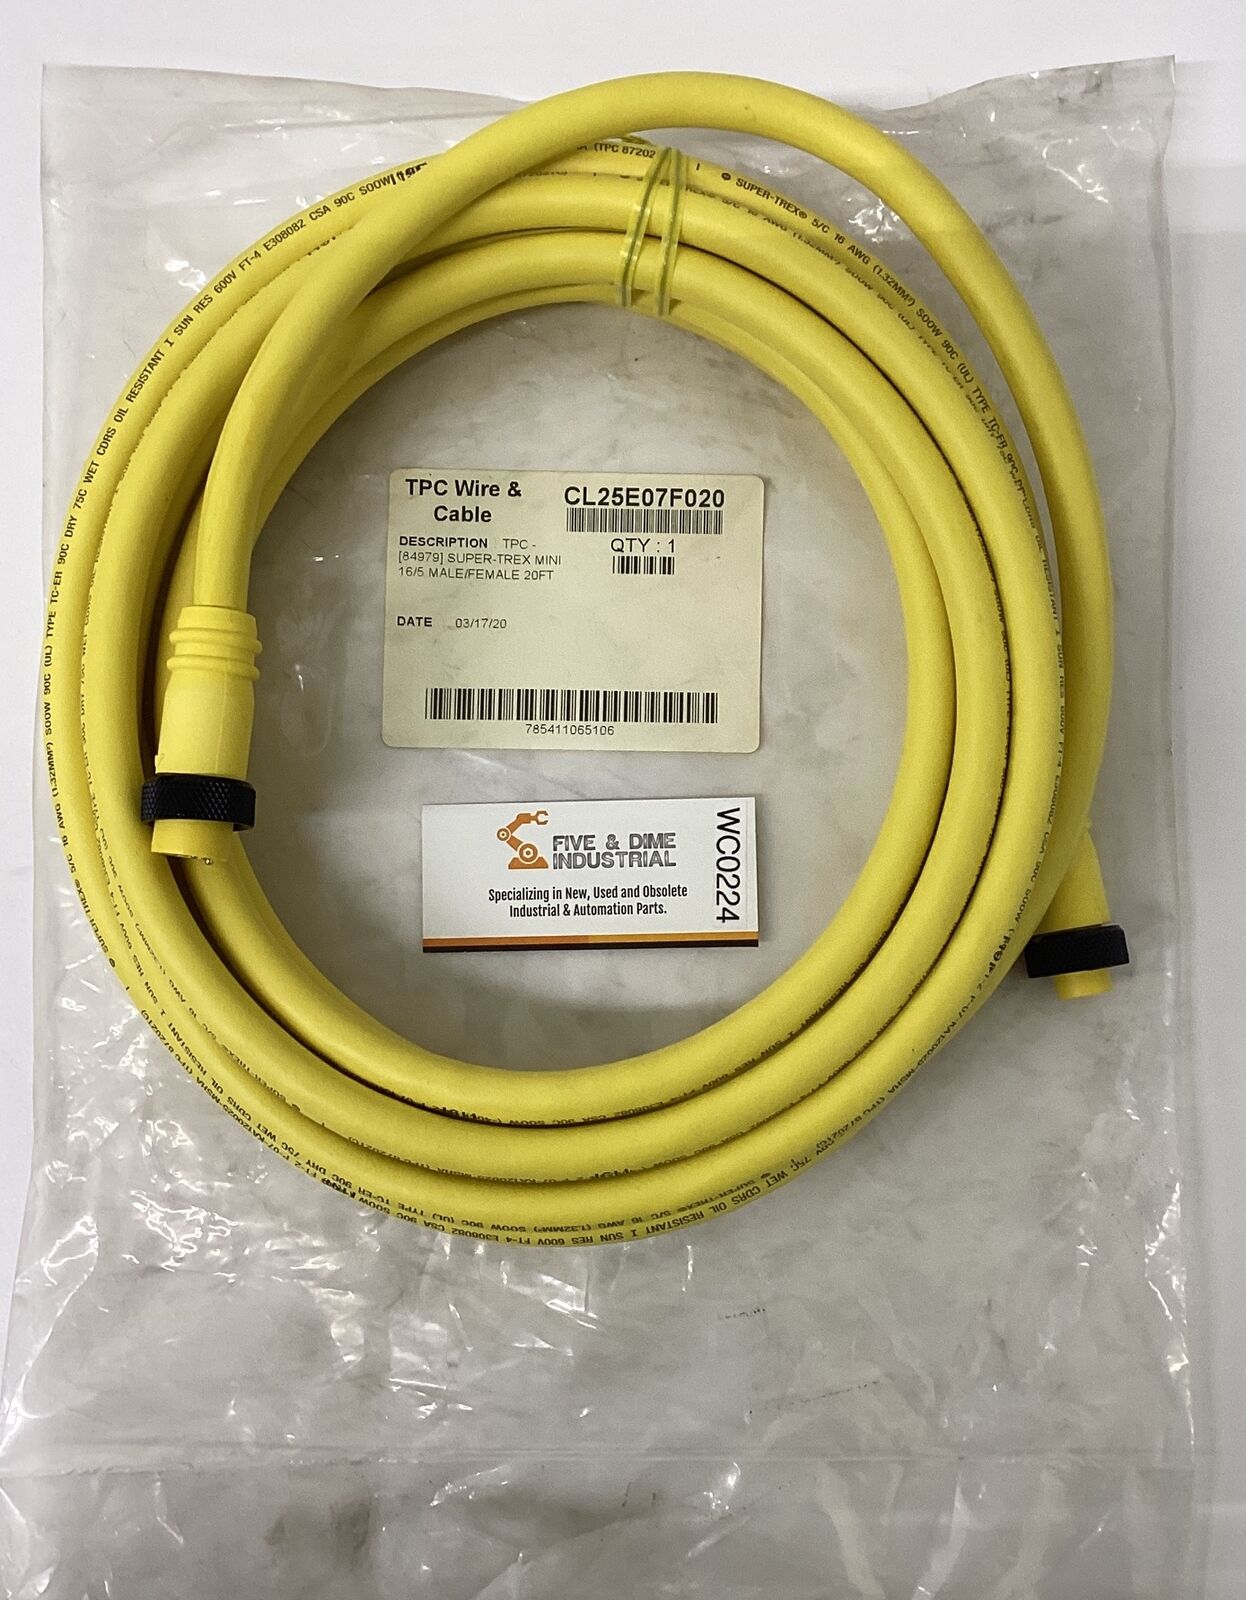 TPC Wire & Cable CL25E07F020 Super-Trex Mini 16/5 Male/Female 20FT (CBL148)